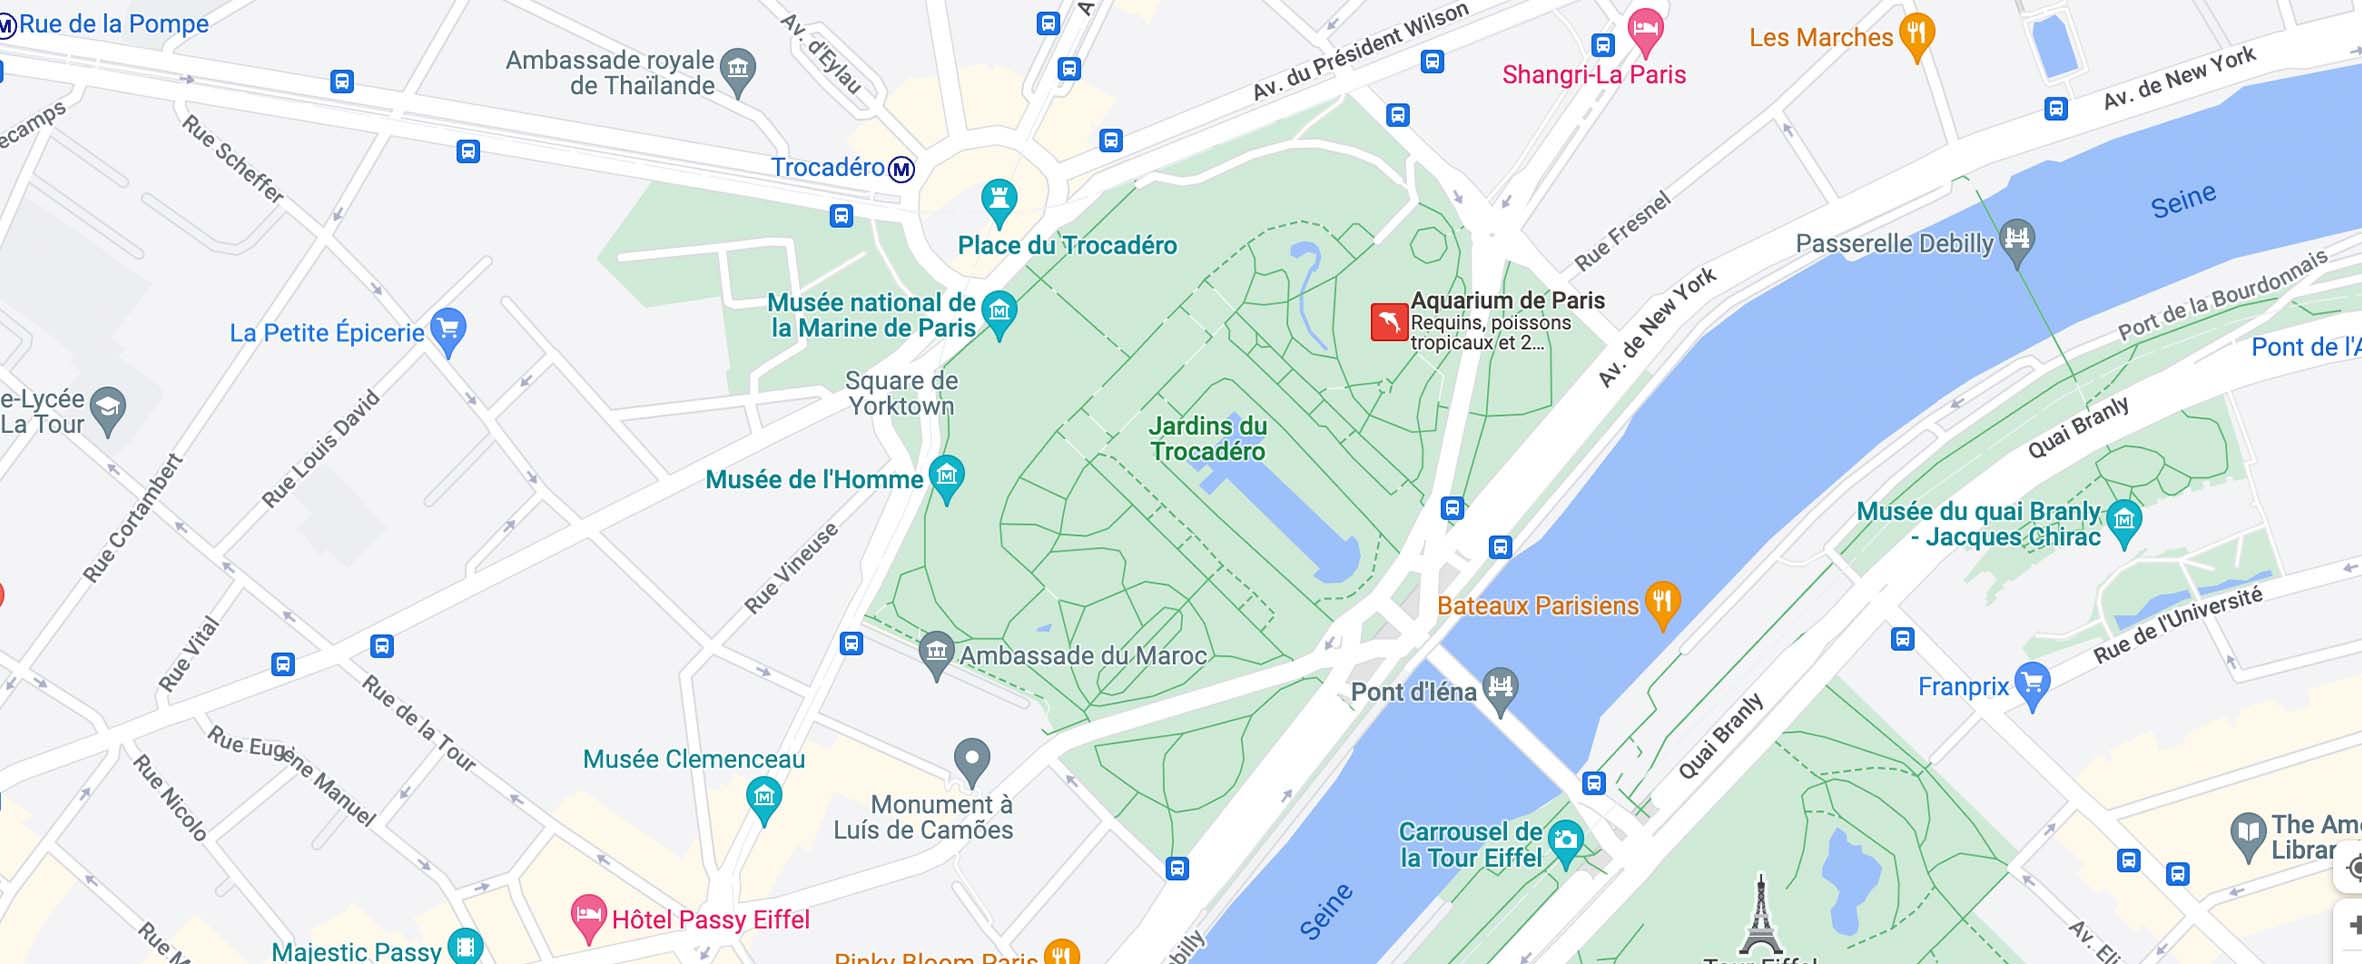 Mapa para llegar al acuario de París